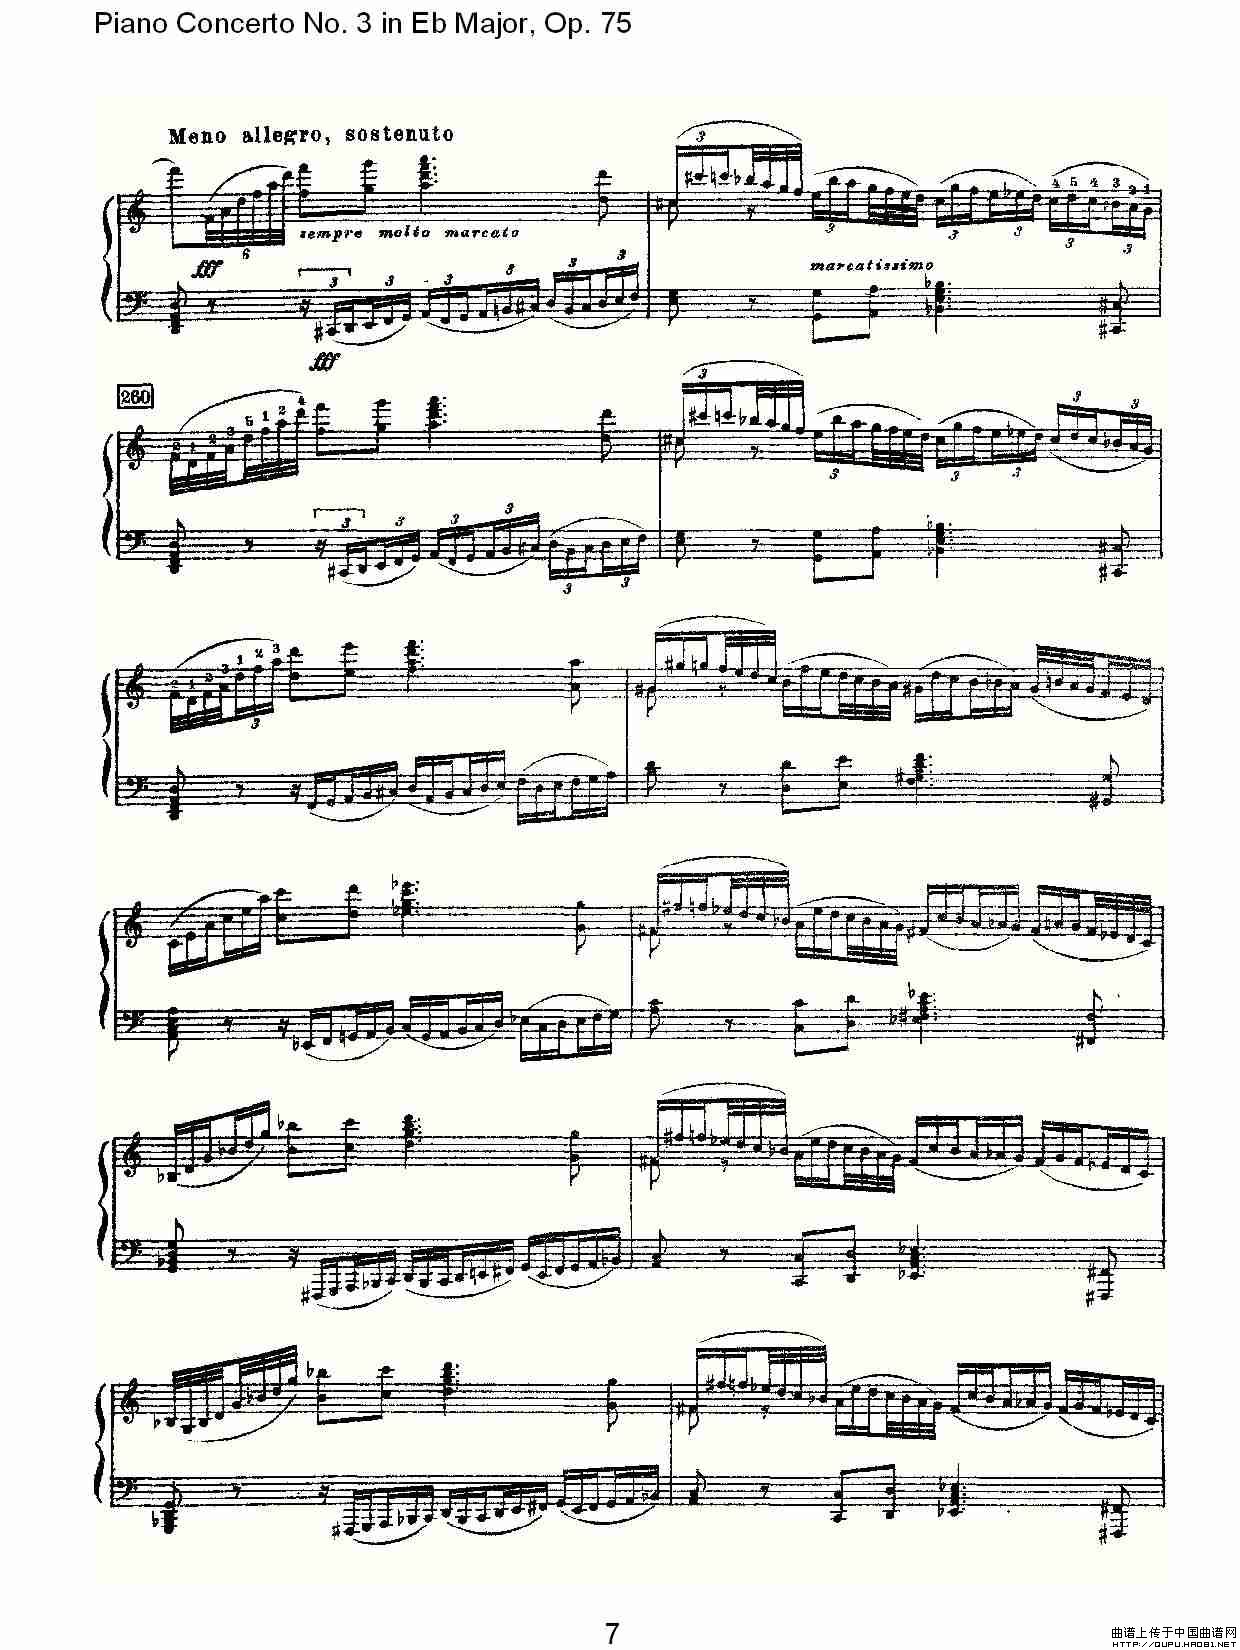 Piano Concerto No.3 in Eb Major, Op.75（Eb大调第三钢琴协奏）(1)_原文件名：Piano Concerto No.3 in Eb Major, Op.757.jpg